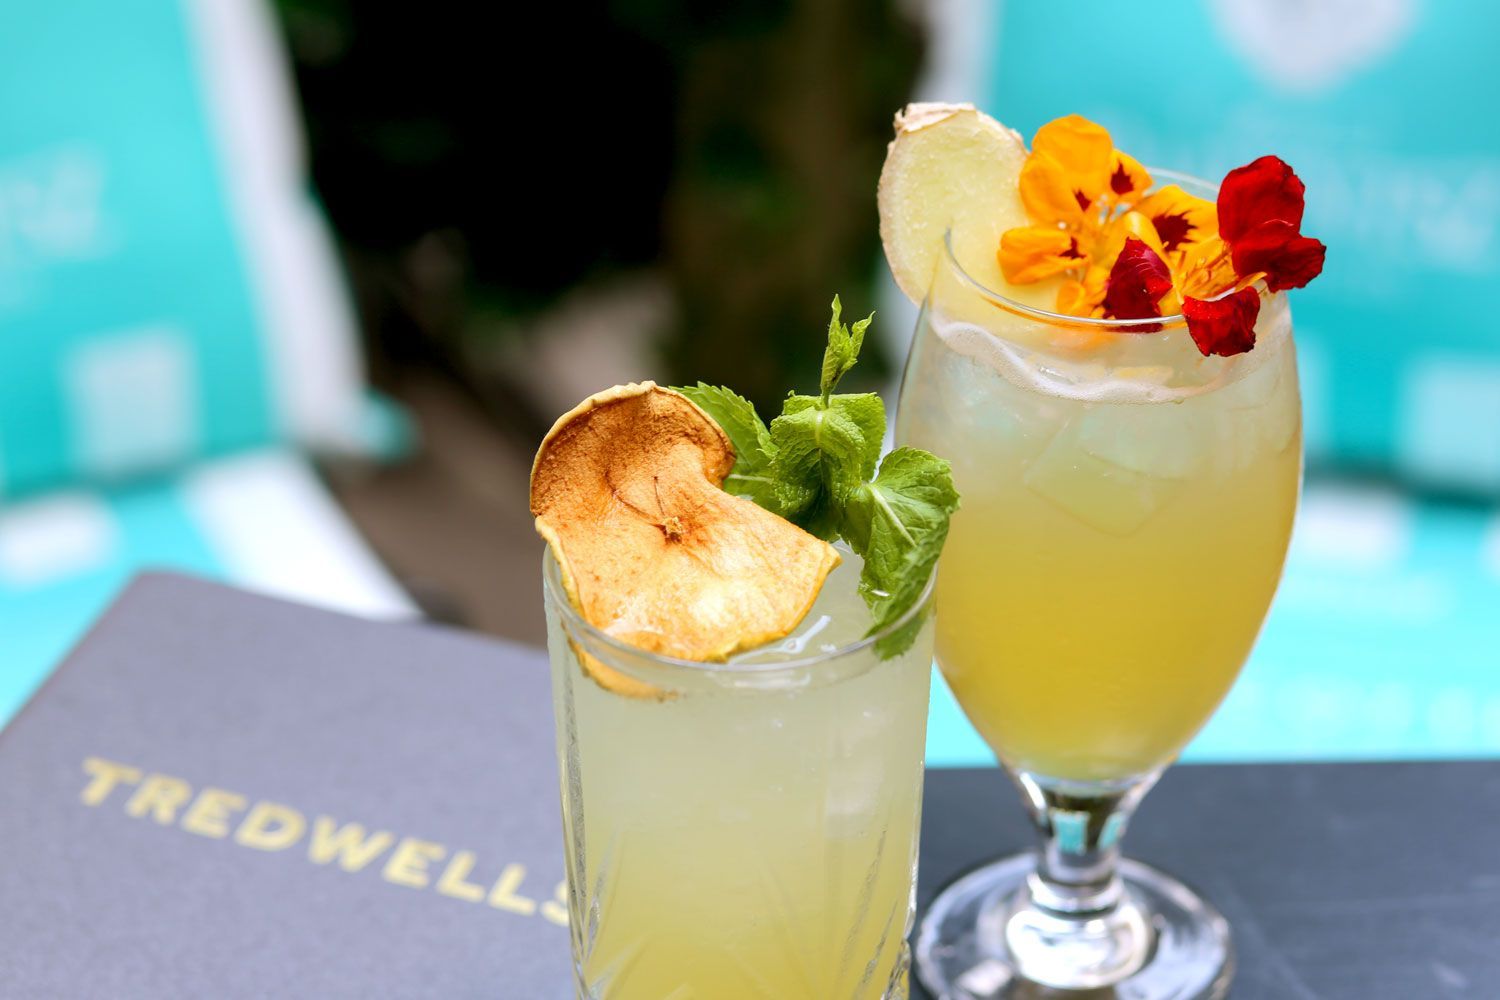 Tredwells Cocktail